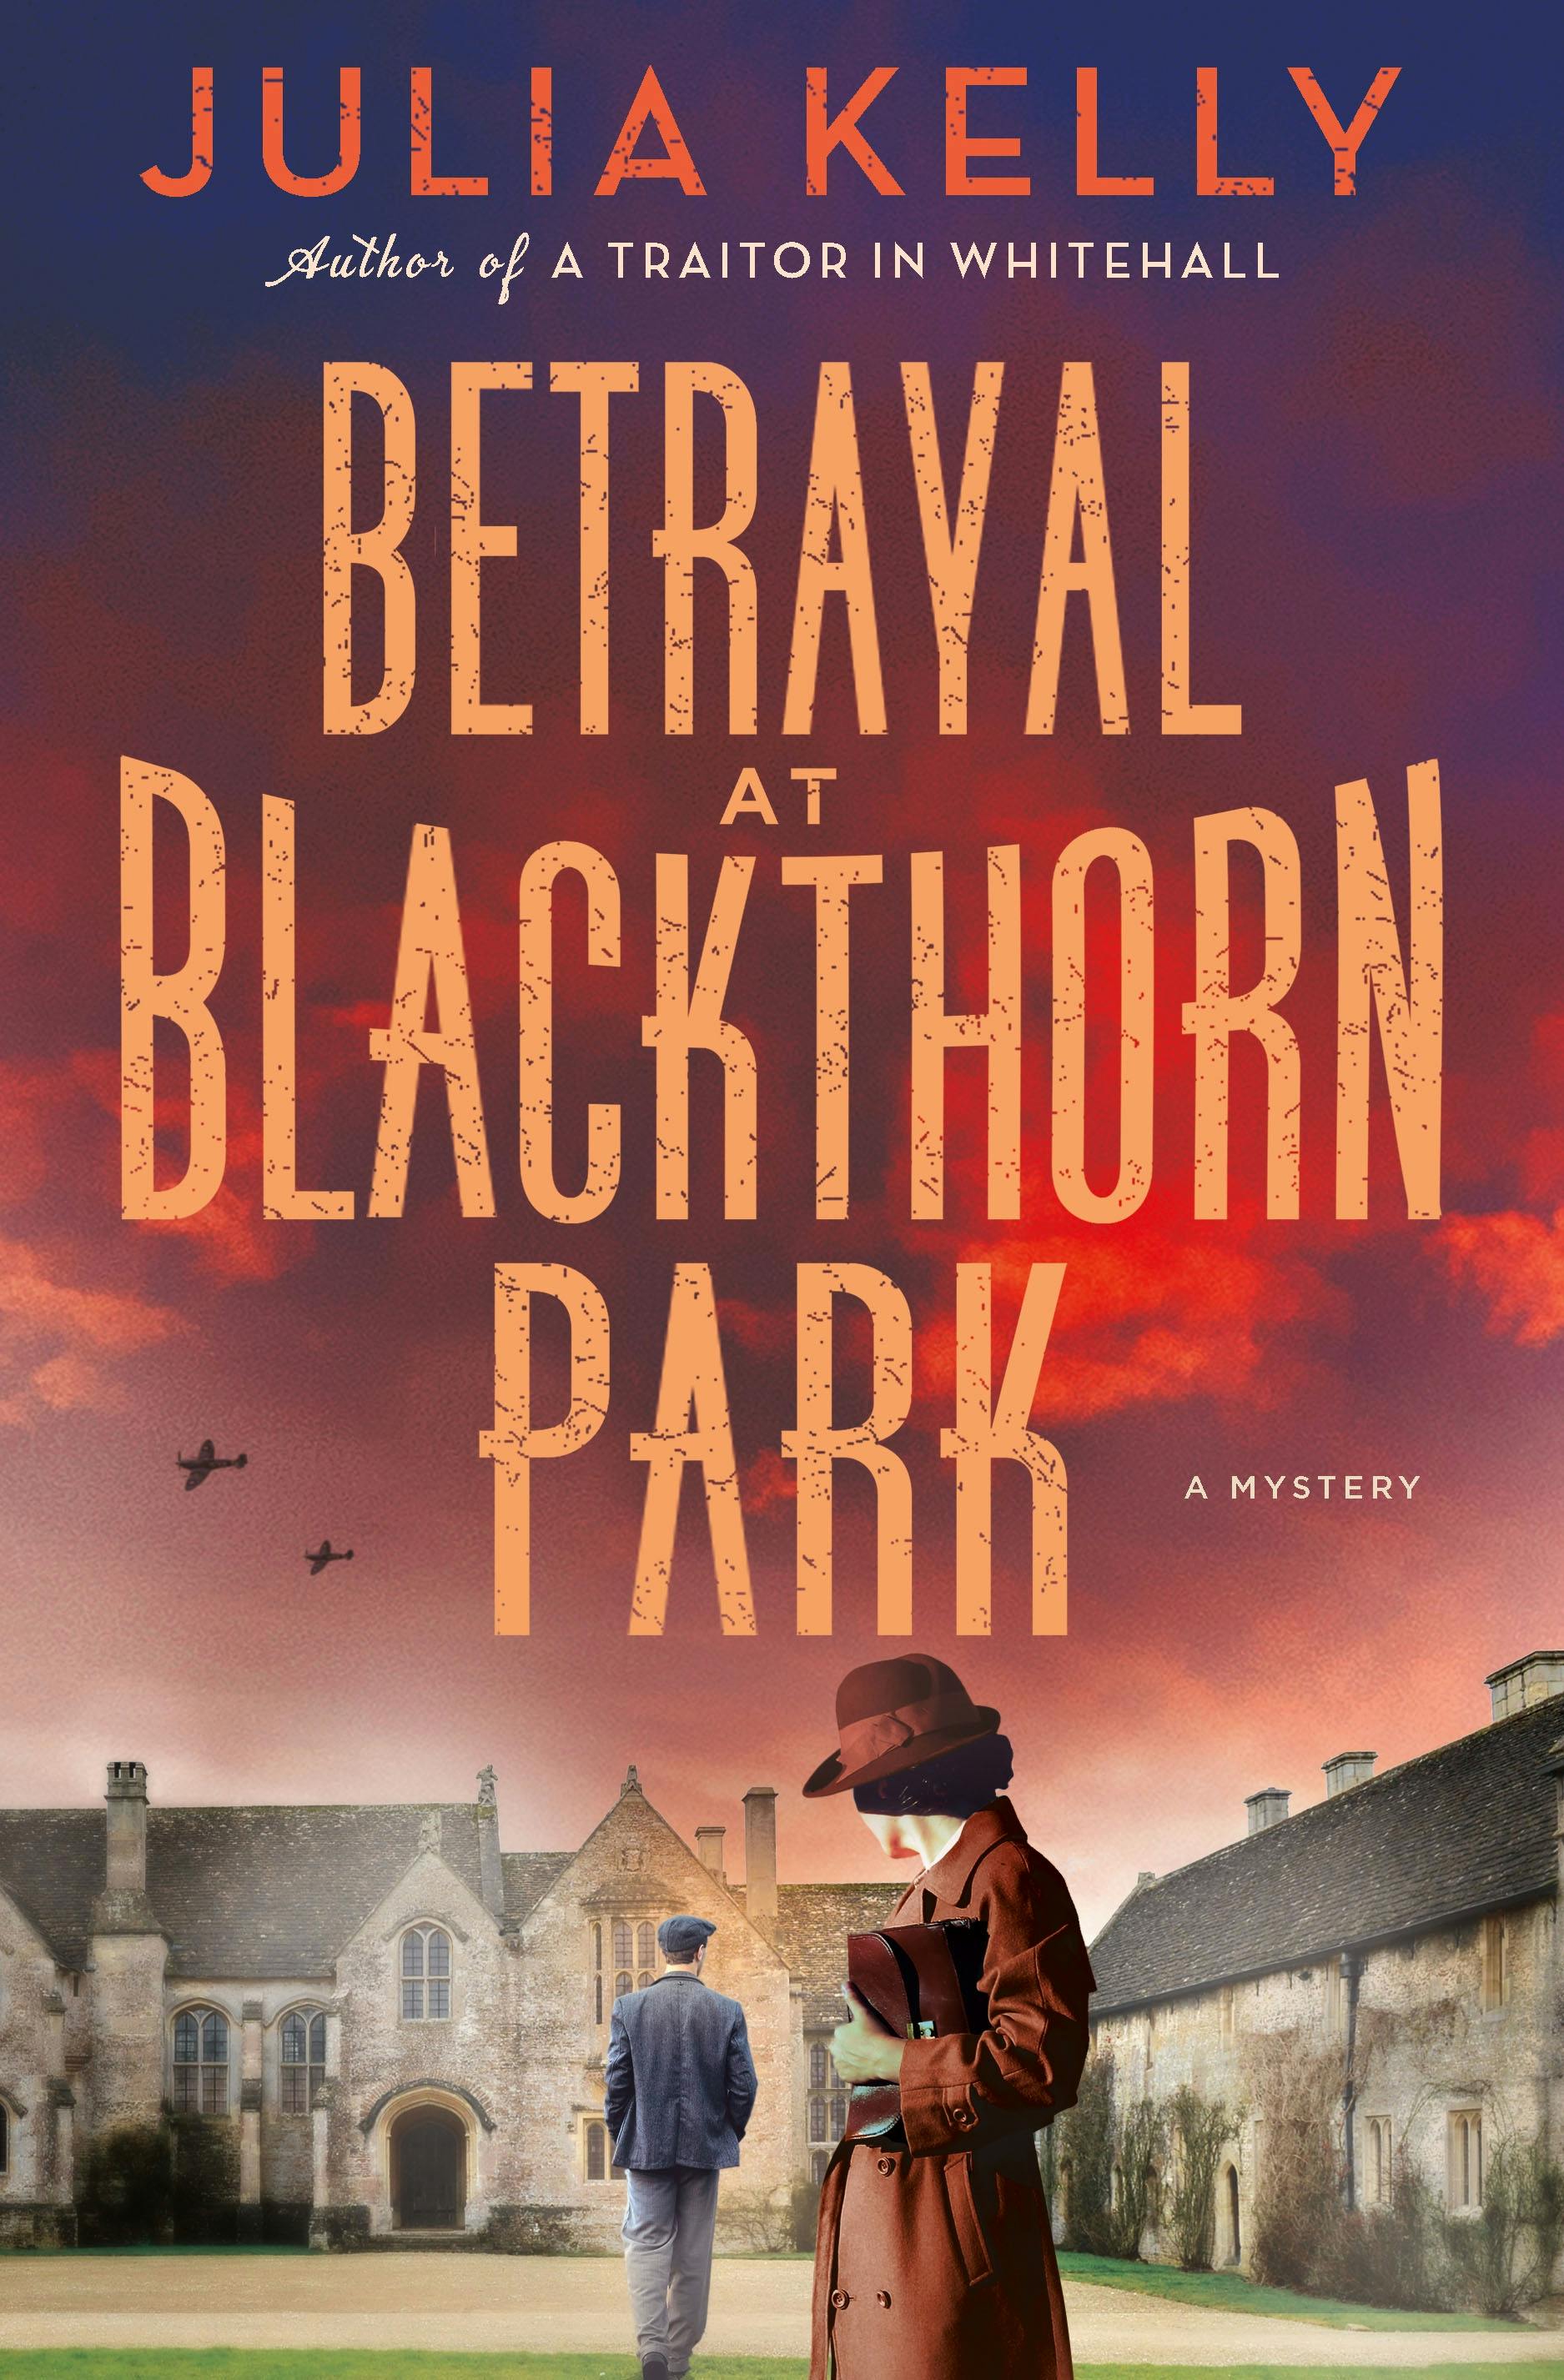 Betrayal at Blackthorn Park